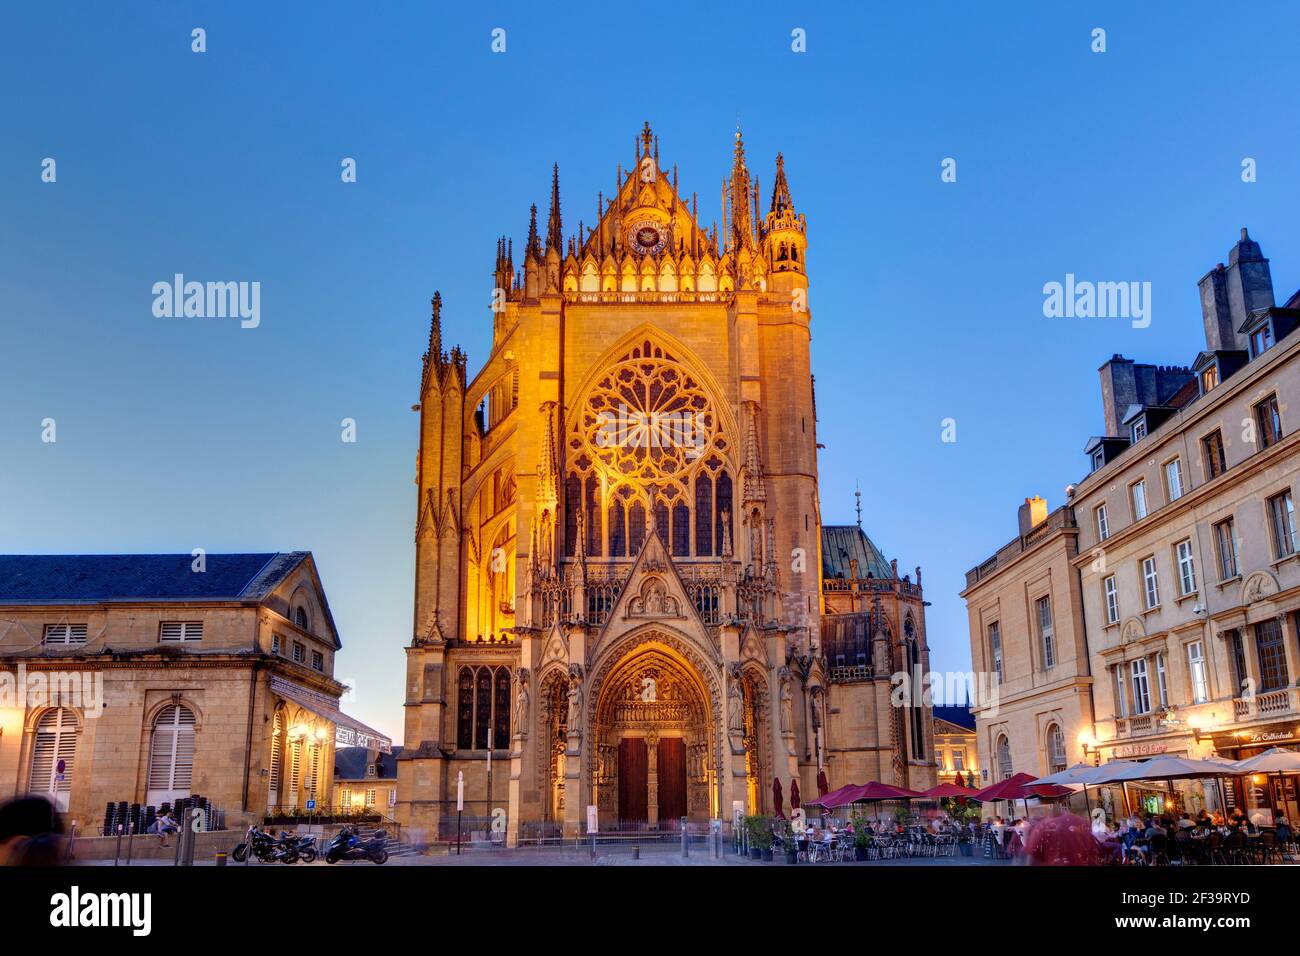 Metz (nord-est de la France) : la cathédrale de Metz ou la cathédrale Saint-Étienne (cathédrale Saint-Étienne-de-Metz) illuminée la nuit, art gothique Banque D'Images